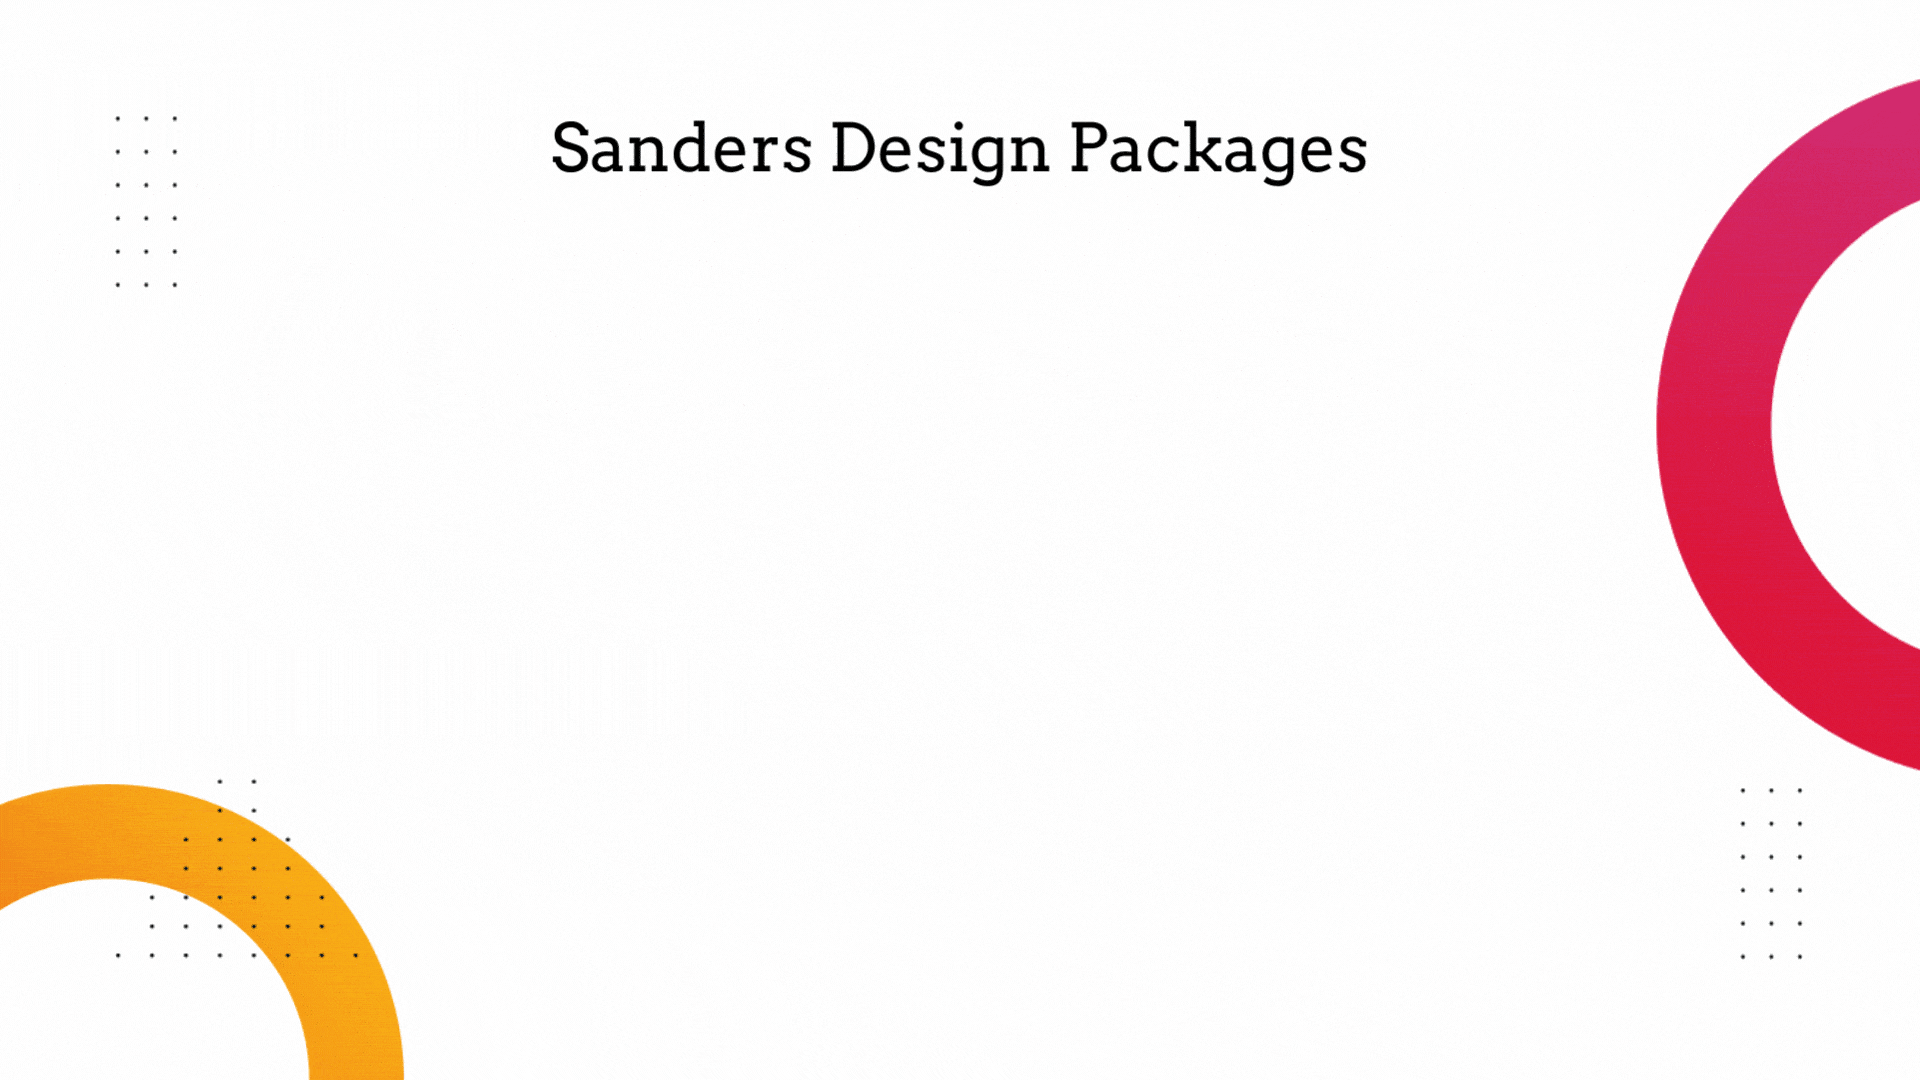 Sanders Design Packages 1 - Sanders Design